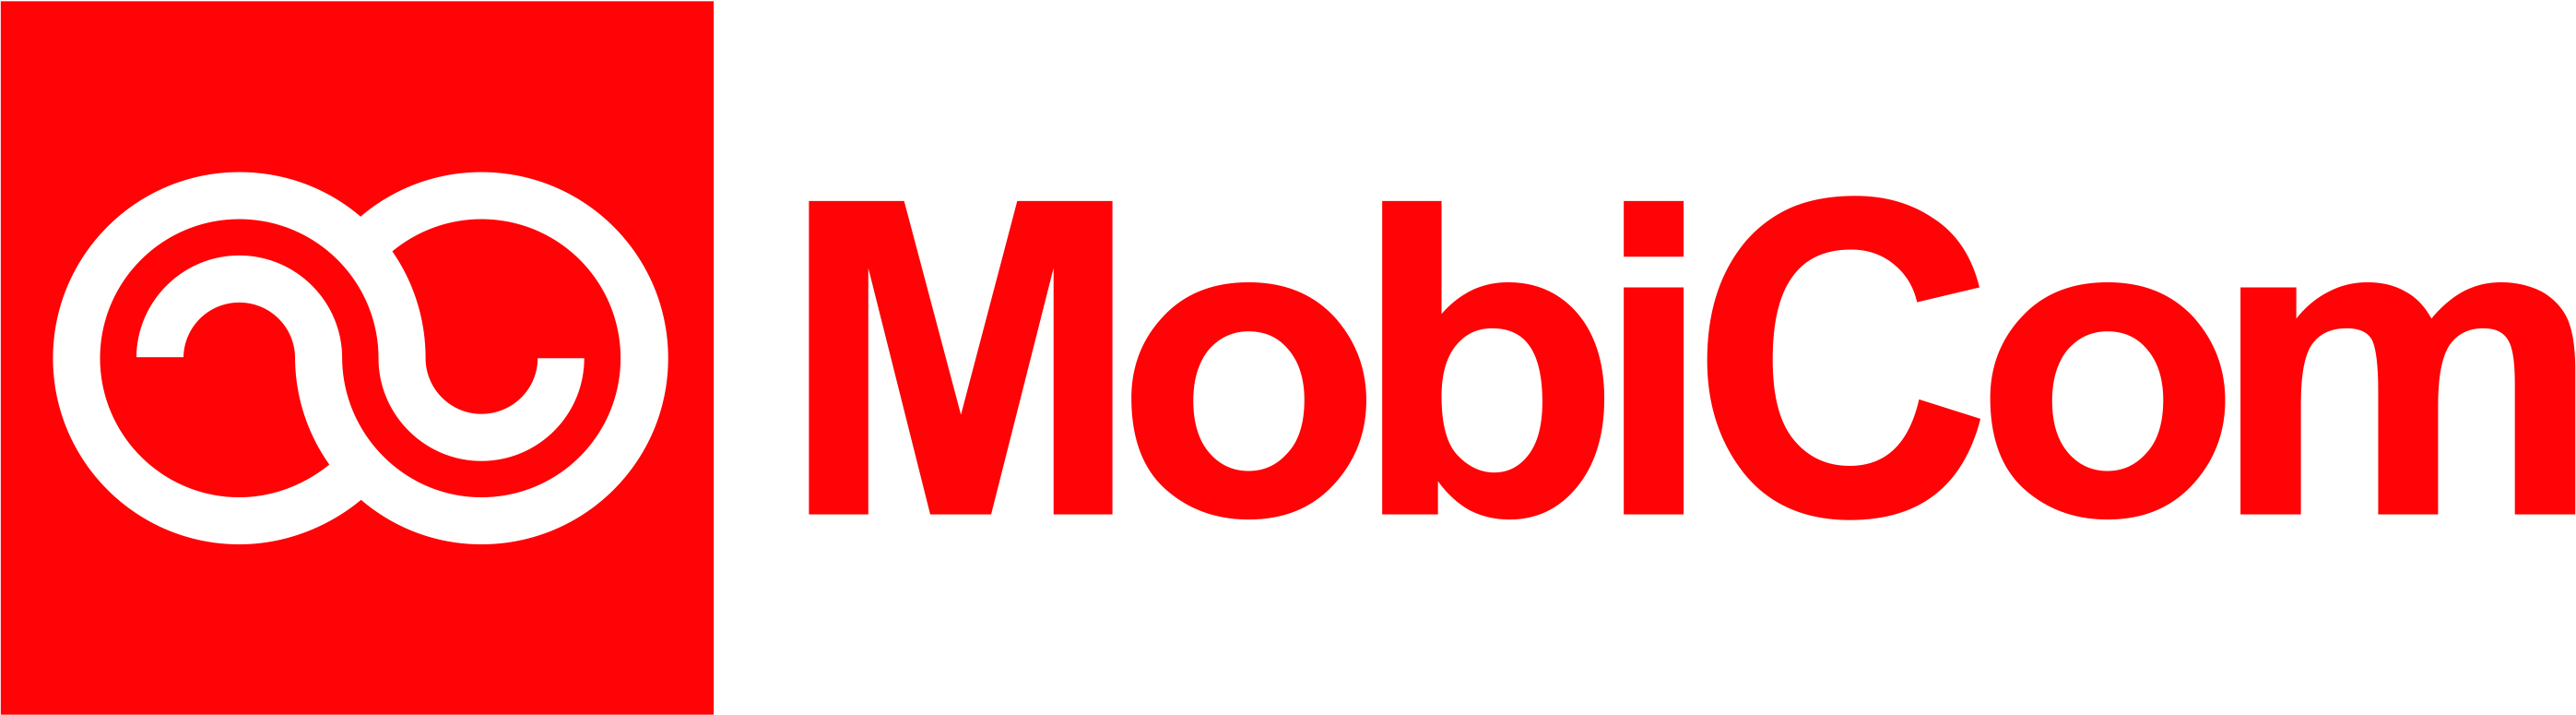 Mobicom corporation